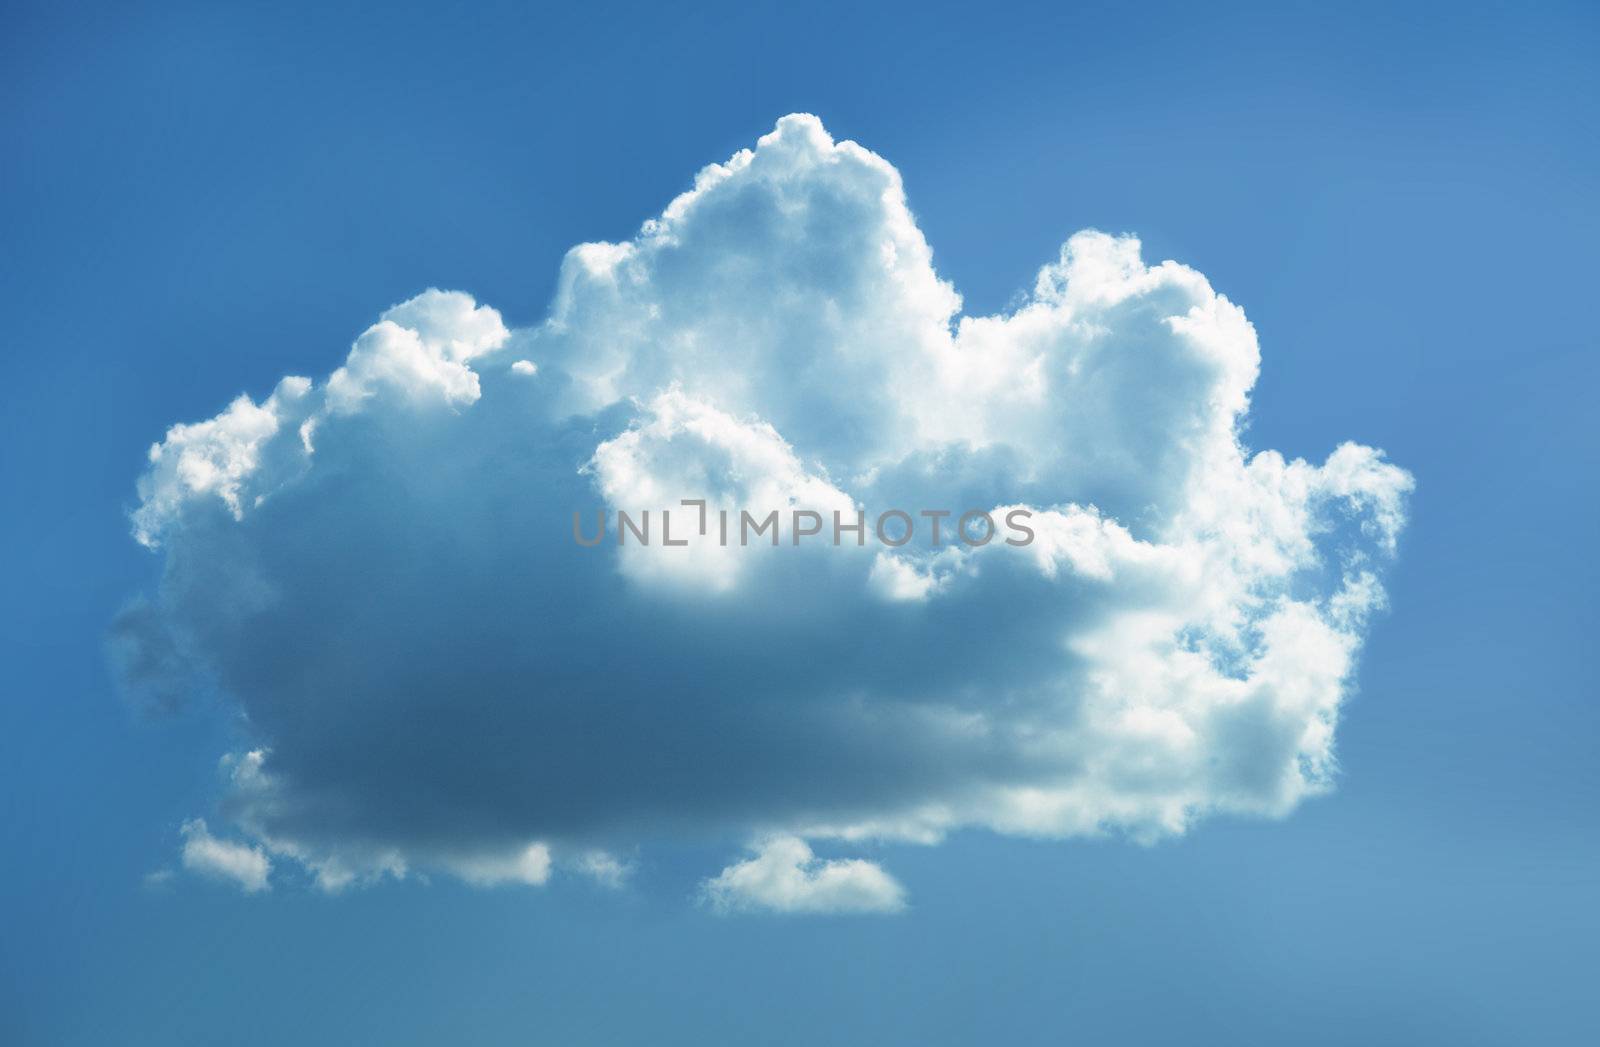 Cloud in sky by pzaxe